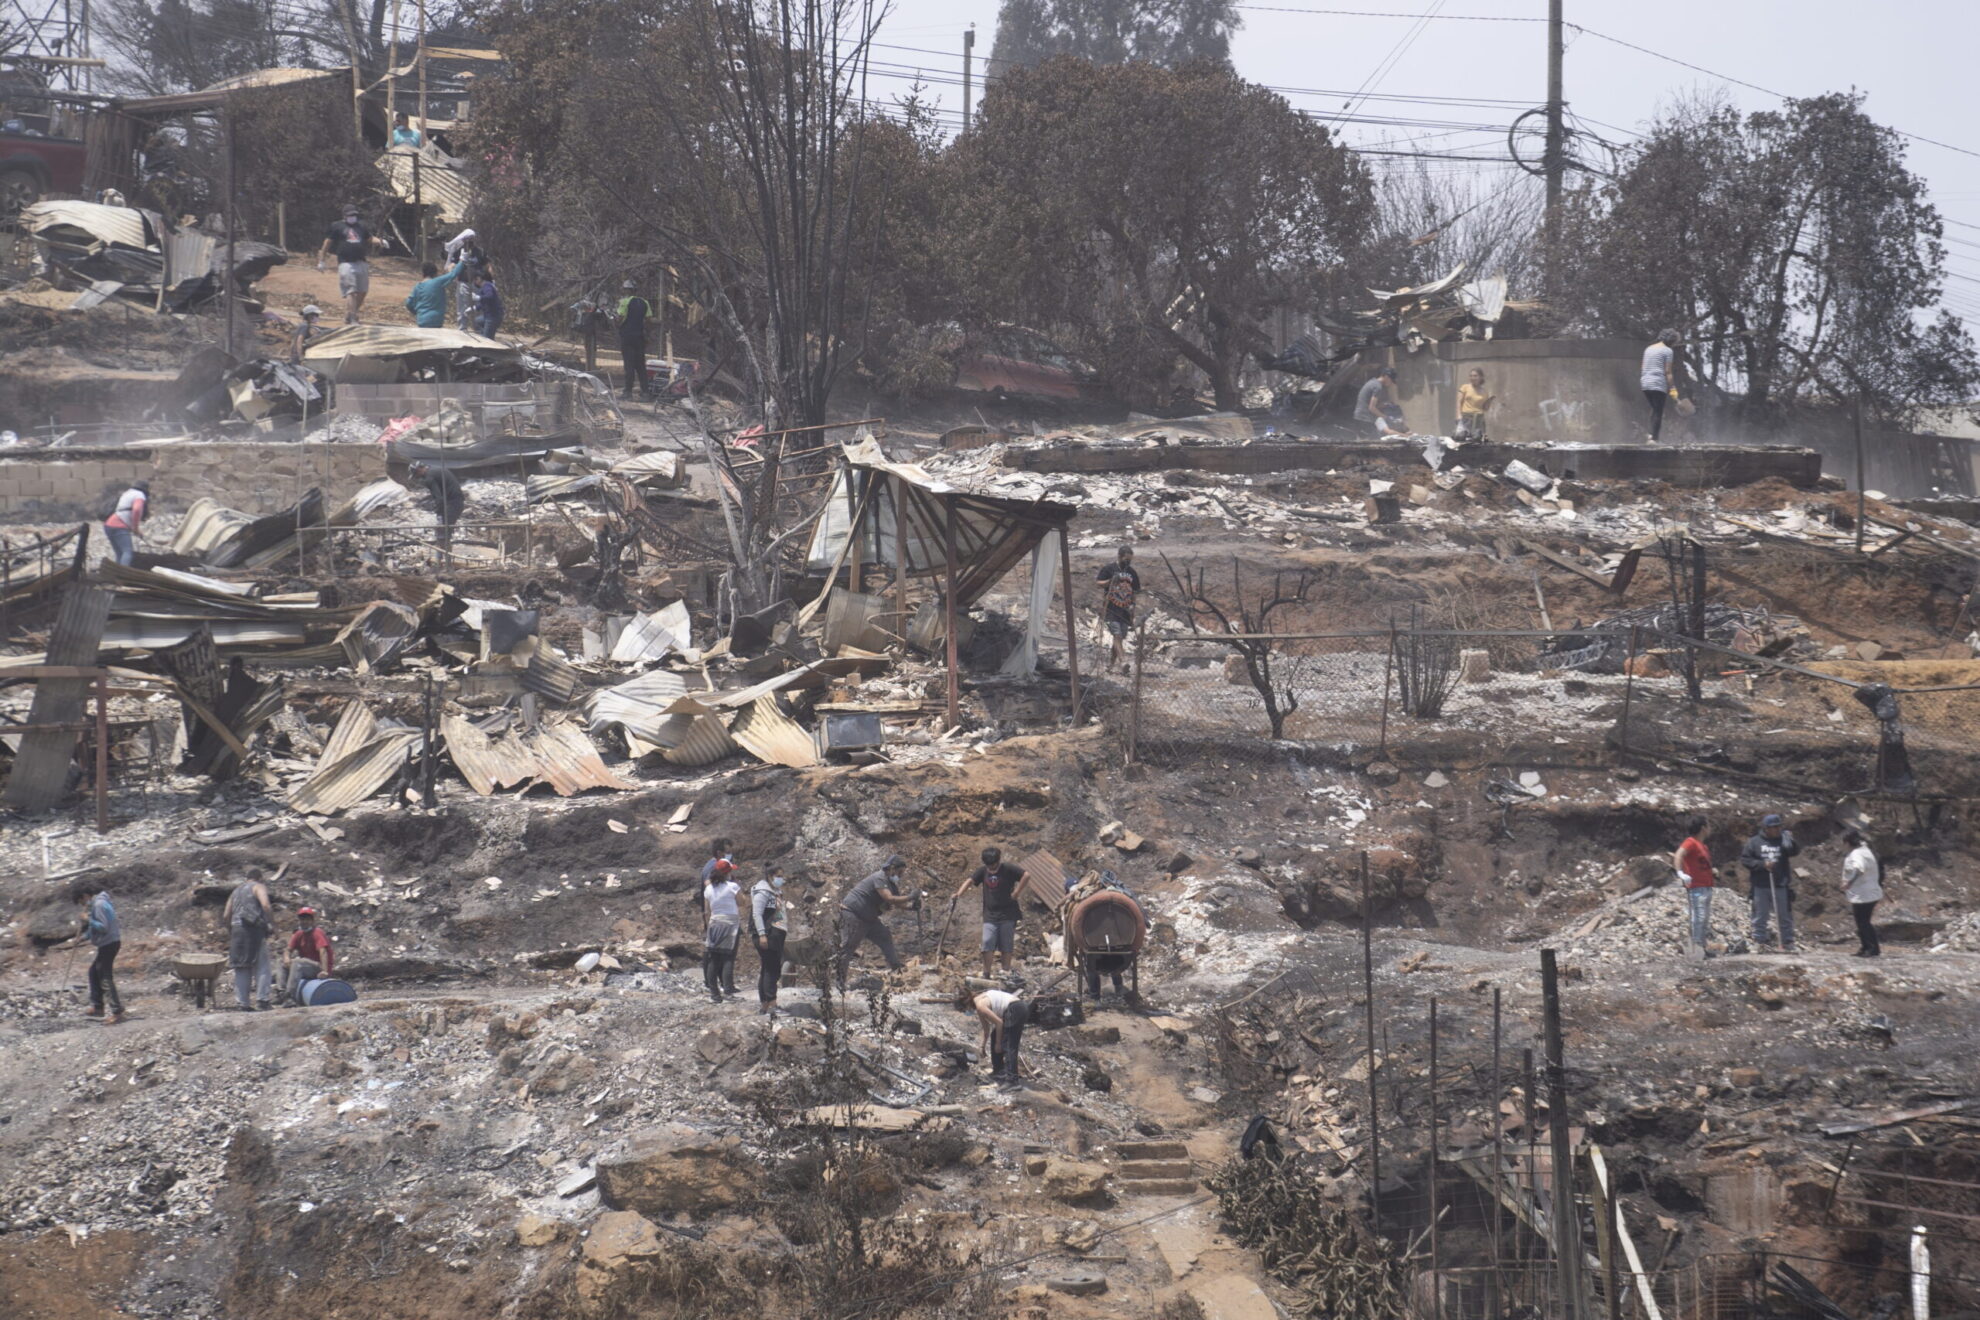 Χιλή – πυρκαγιές: Κατάσταση έκτακτης ανάγκης και διήμερο πένθος στη χώρα – Εκατοντάδες νεκροί και αγνοούμενοι